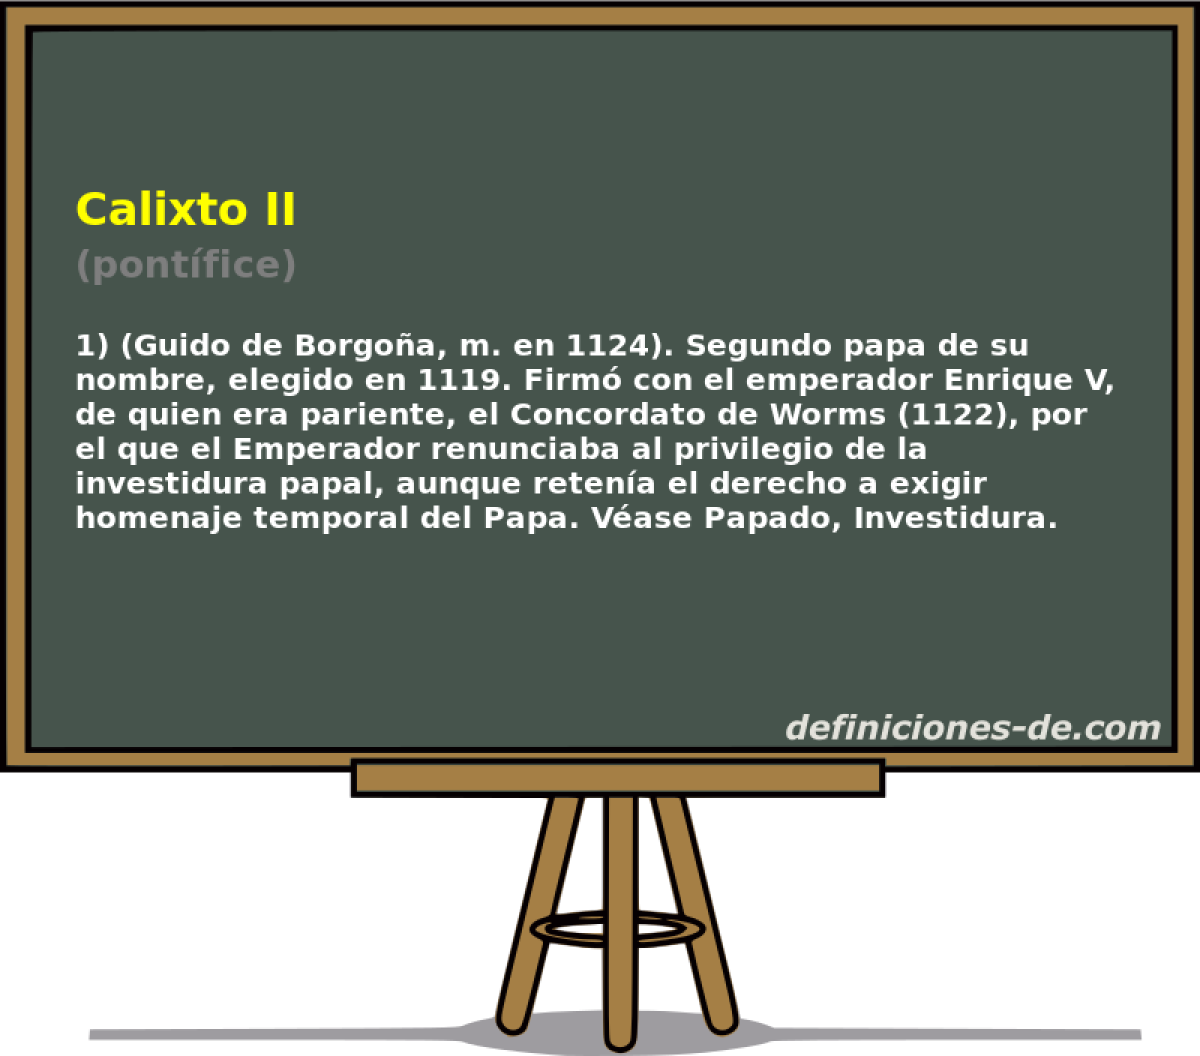 Calixto II (pontfice)